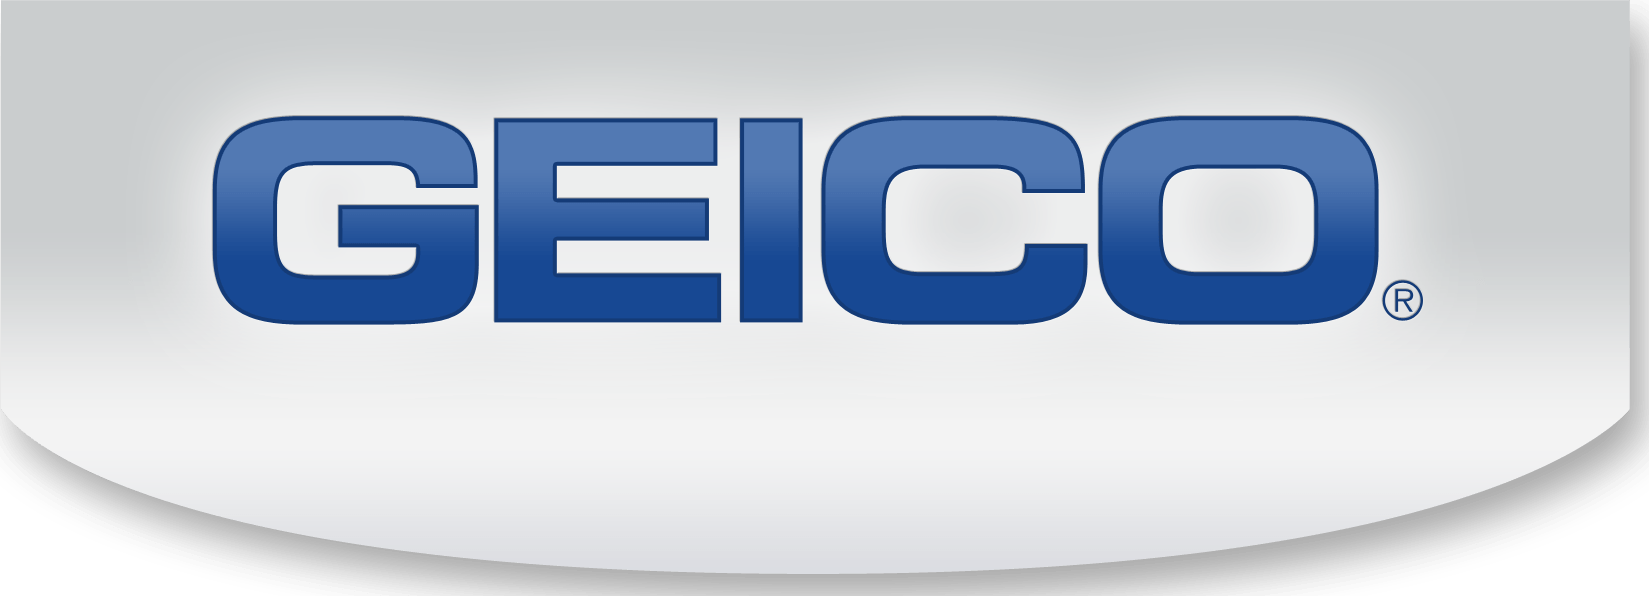 Geico.com Logo - Access Your Claim